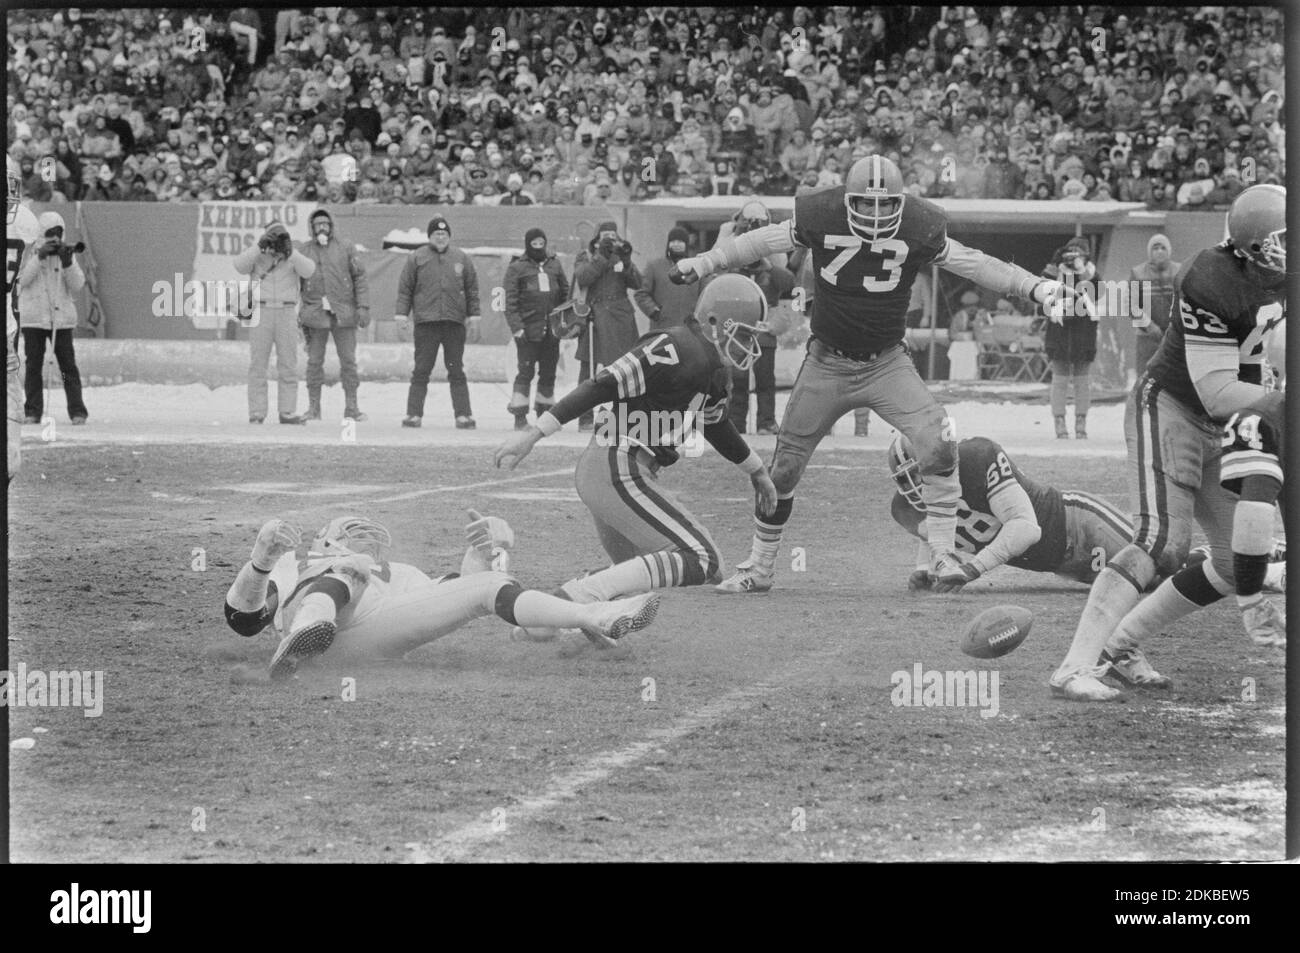 Cleveland Browns Quarterback Brian Sipe (17) jagt einen Fumble während des Playoff-Spiels gegen die Oakland Raiders im Cleveland Stadium am 4. Januar 1981. Ernie Mastroianni Foto Stockfoto